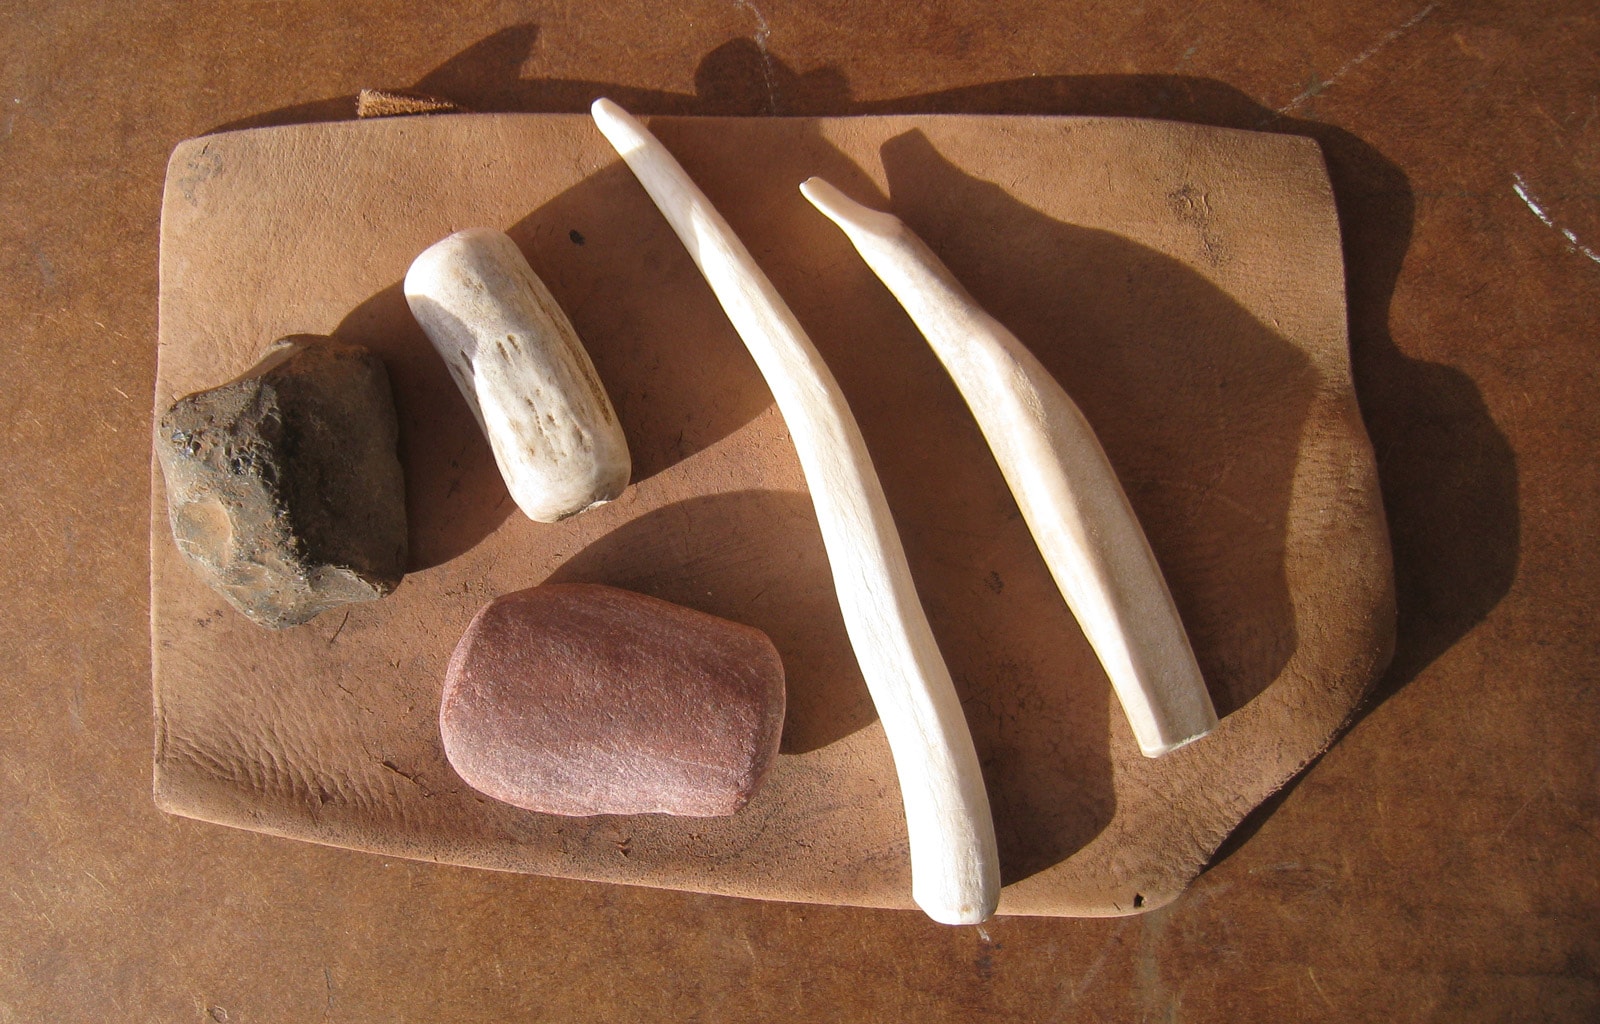 Flint Knapping Kits Make Ancient Stone Tools -  Norway